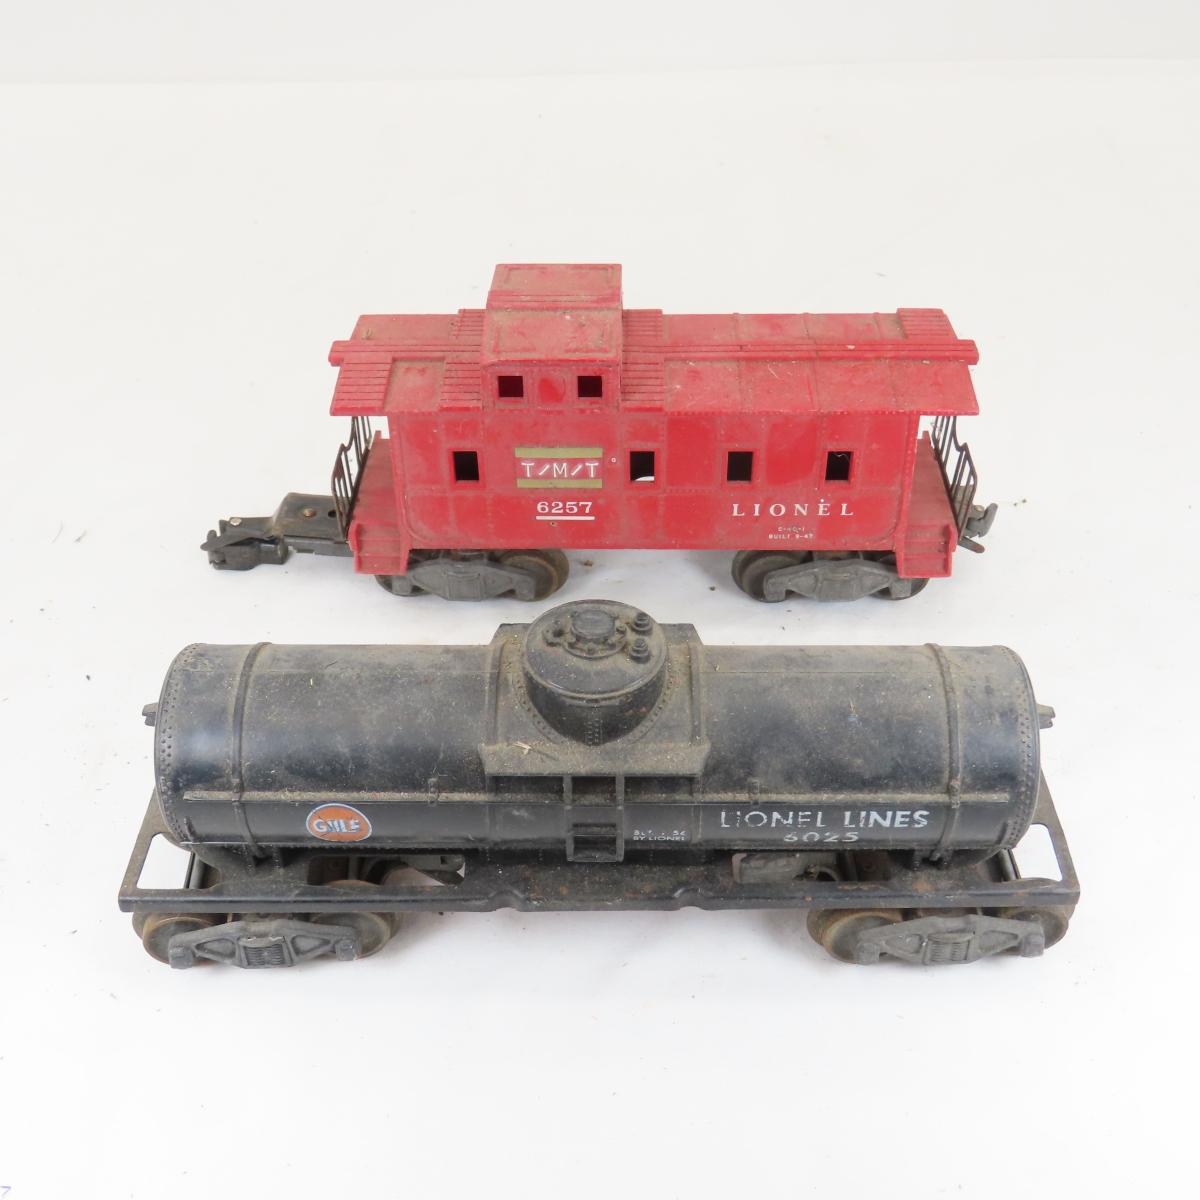 Vintage Lionel O27 Locomotive, Cars, Track & More